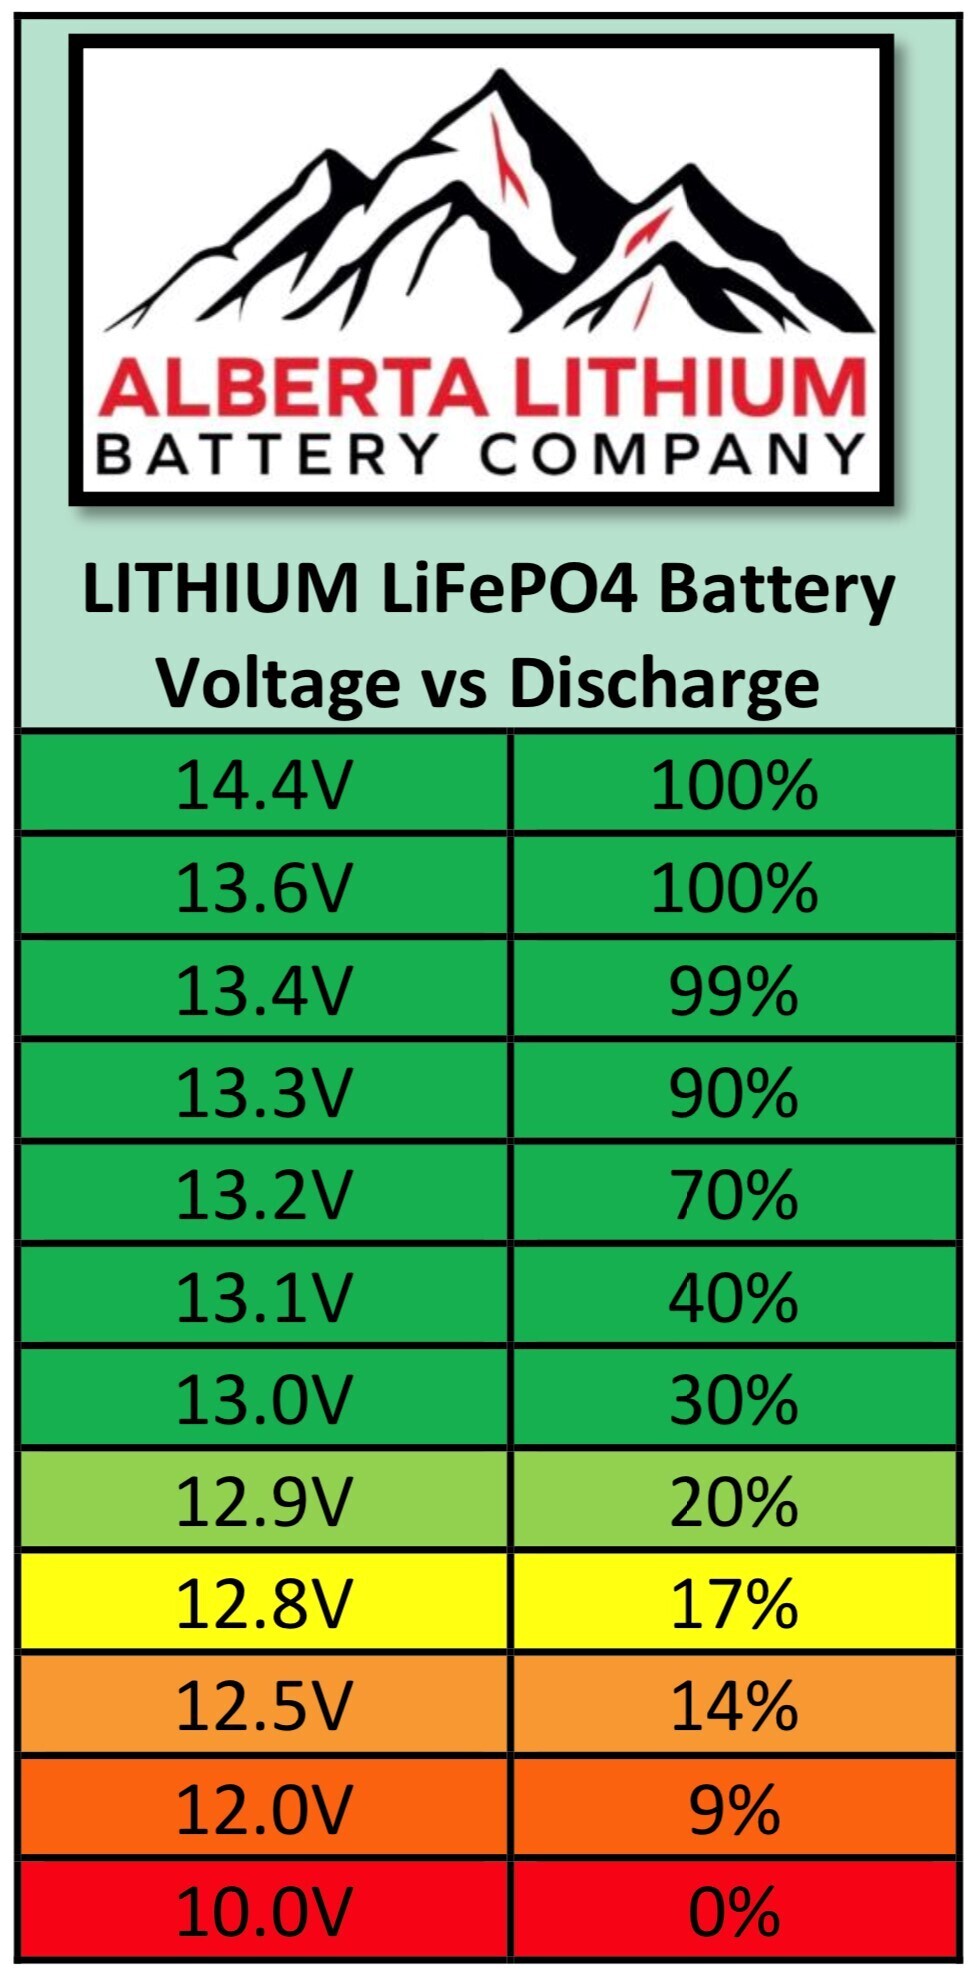 LiFePO4 Battery Tracker